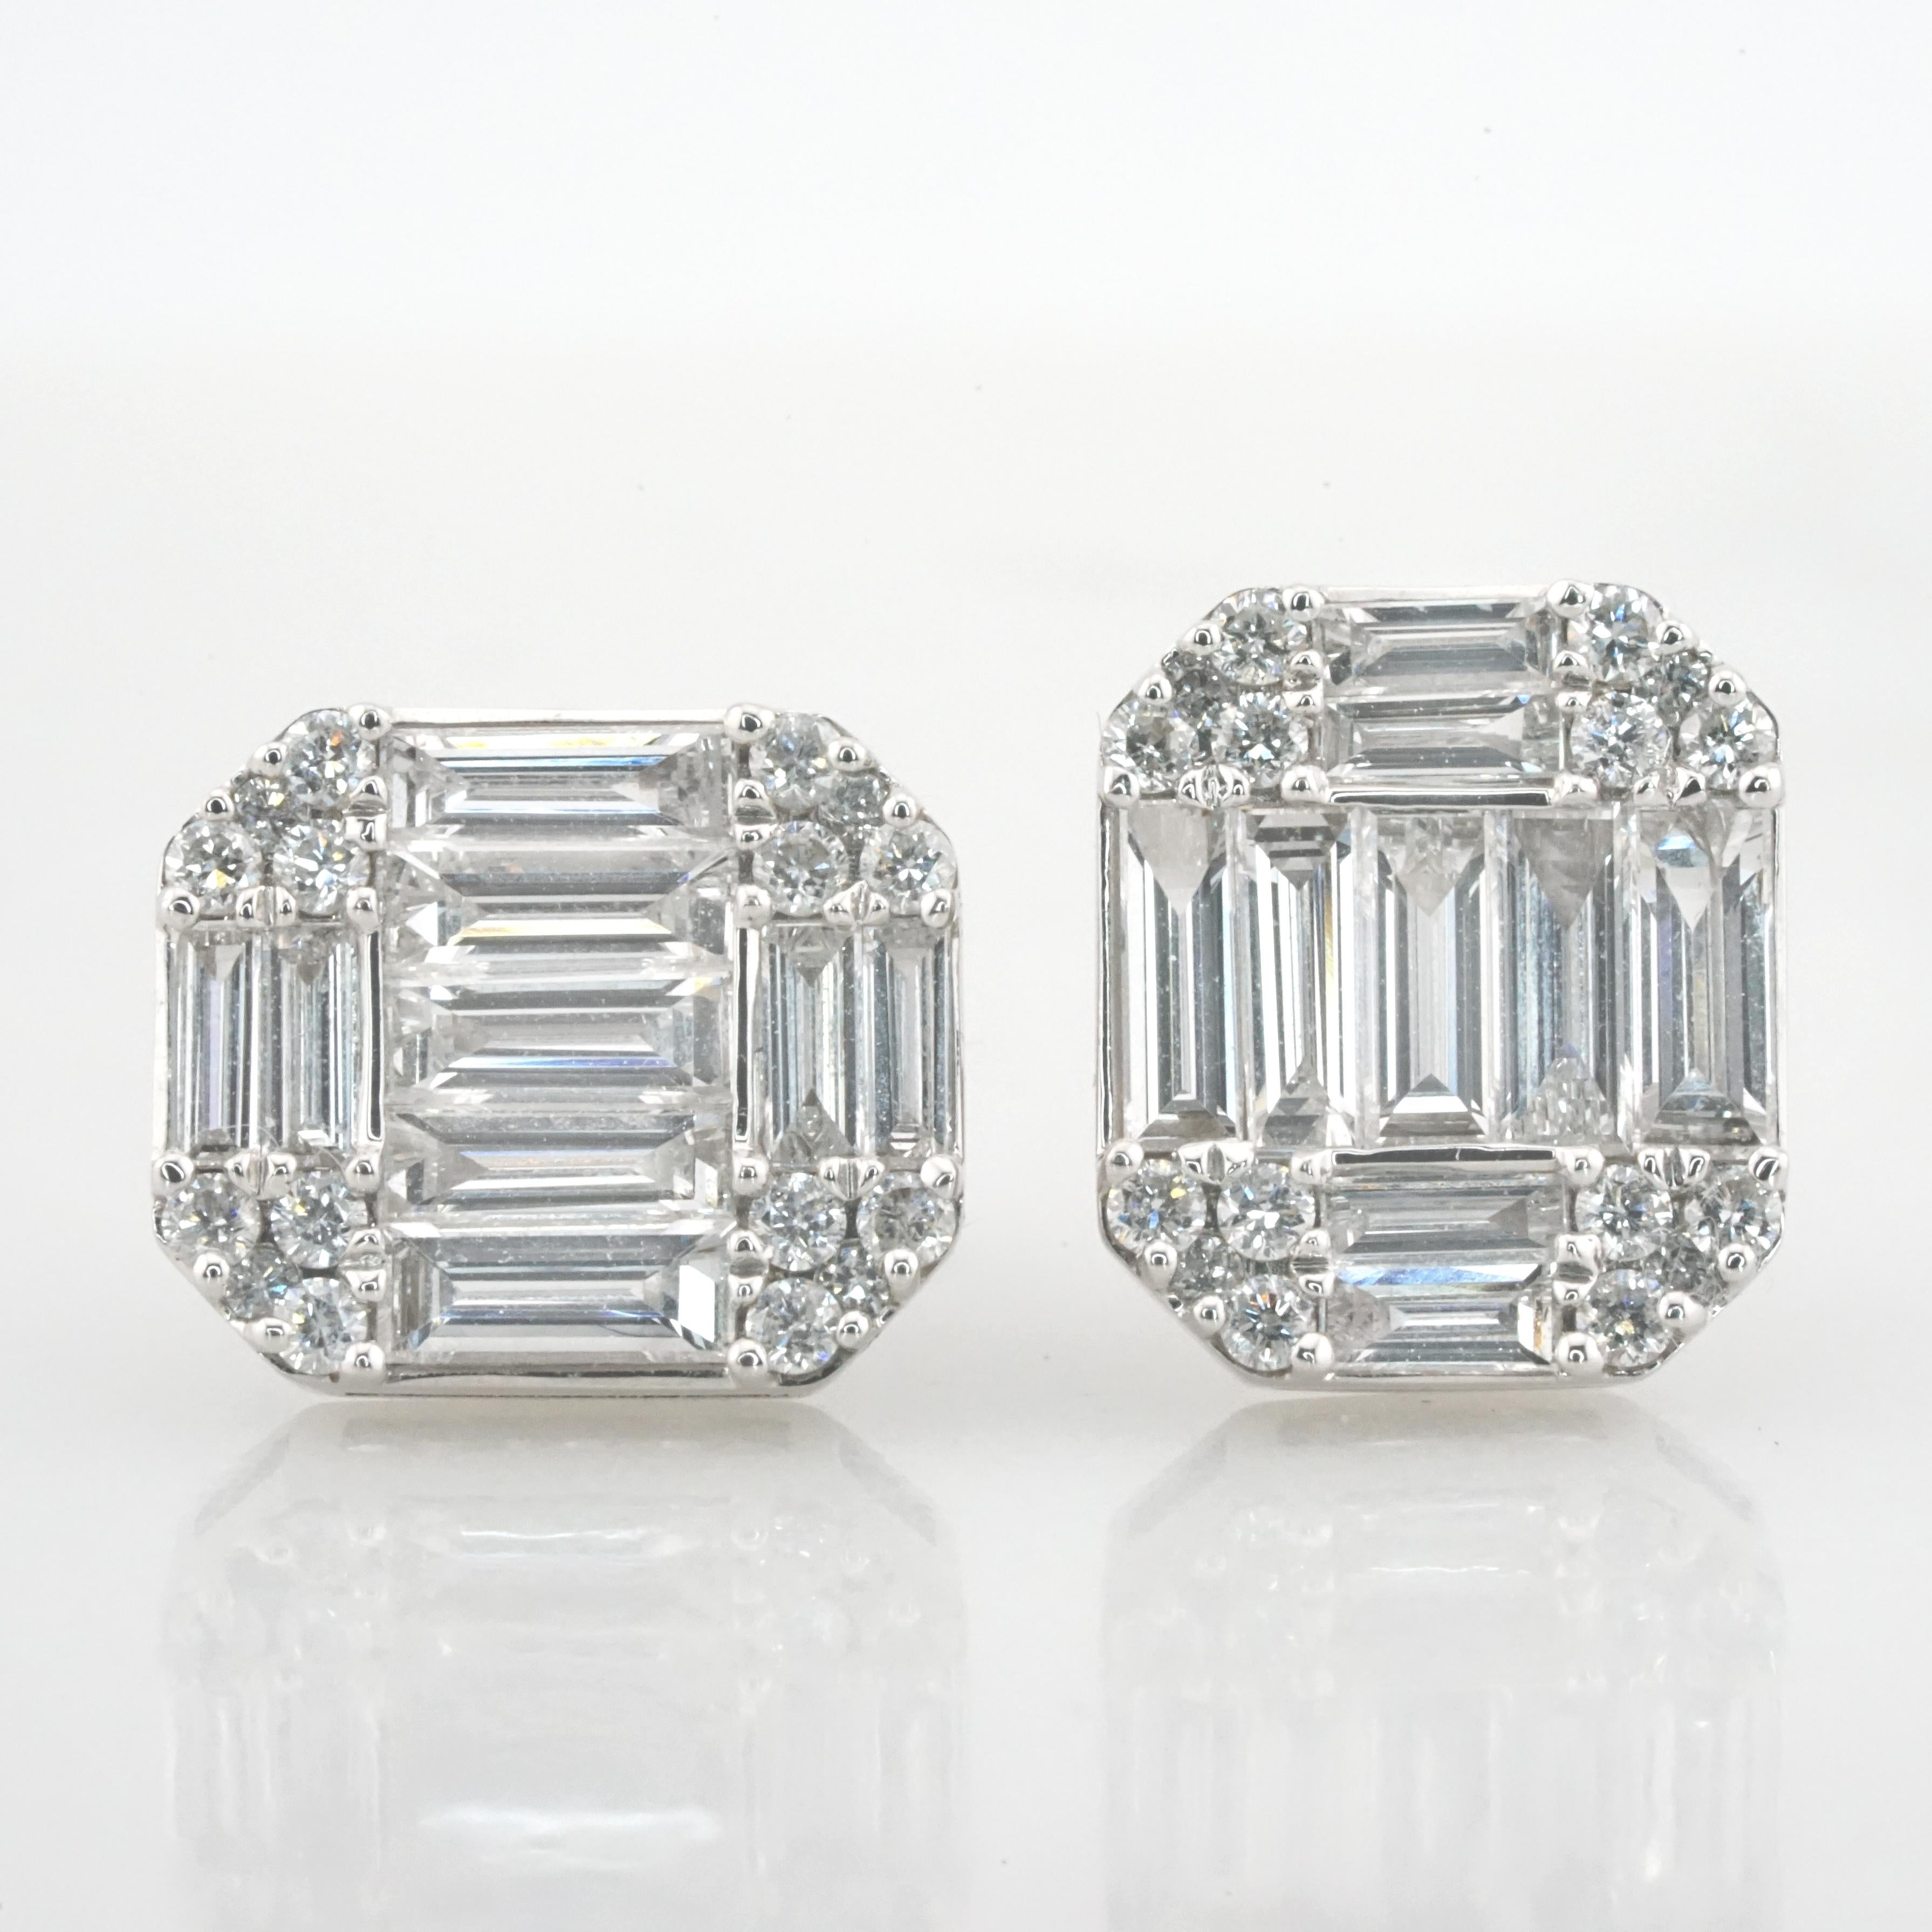 Nous vous présentons une paire d'exquises boucles d'oreilles en diamant d'un poids total de 1,46 carat, méticuleusement fabriquées par la célèbre maison Antinori Di Sanpietro. Serties dans de l'or blanc 18k lustré, ces boucles d'oreilles présentent